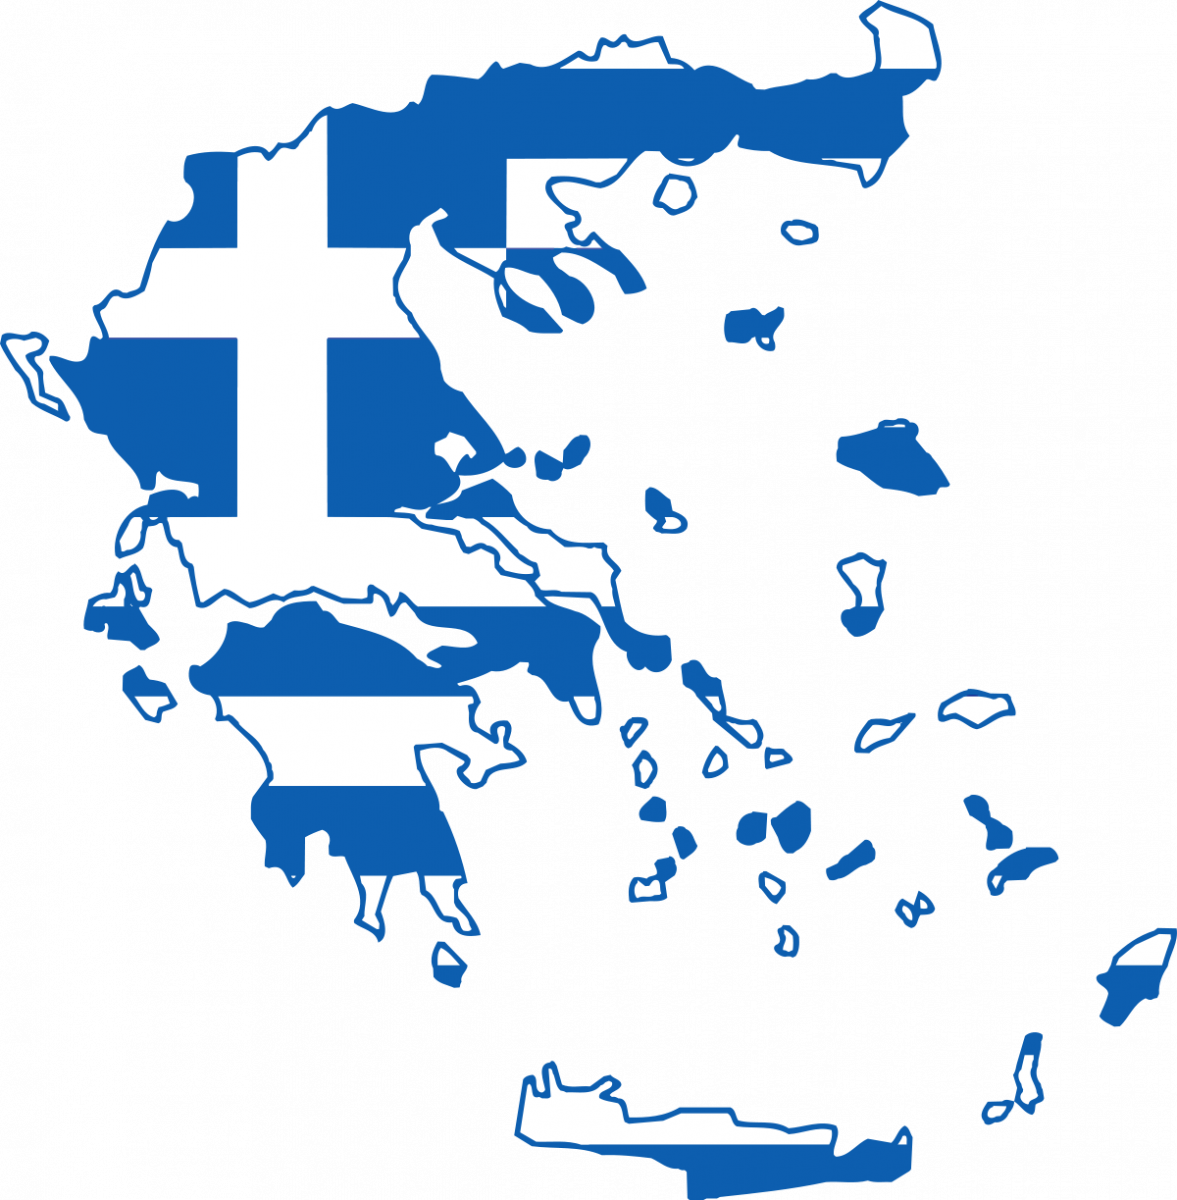 Entrega De Paquete A Grecia